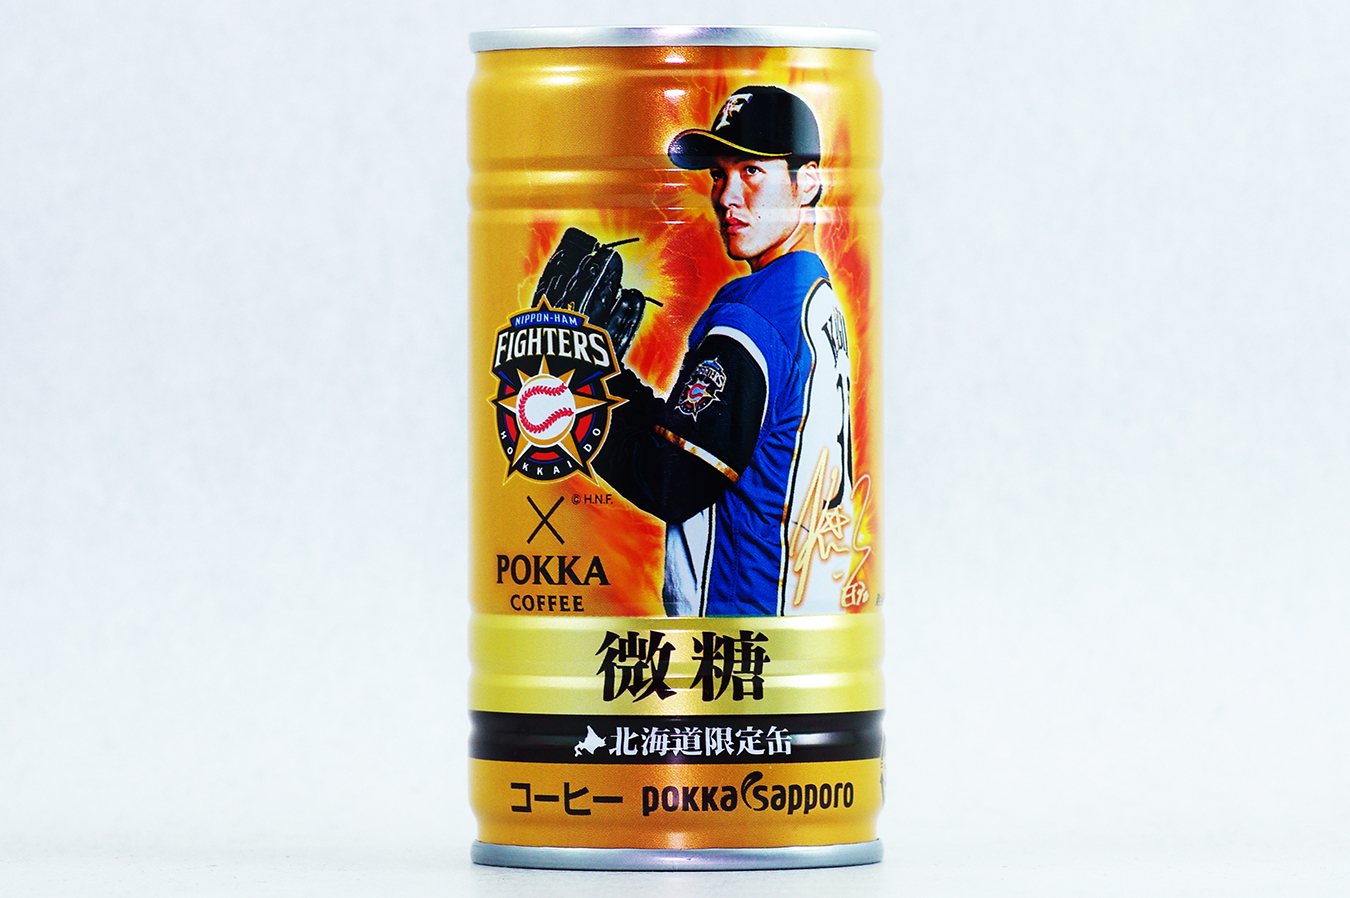 ポッカコーヒー ファイターズ2016年選手缶 微糖 鍵谷陽平選手 2017年5月